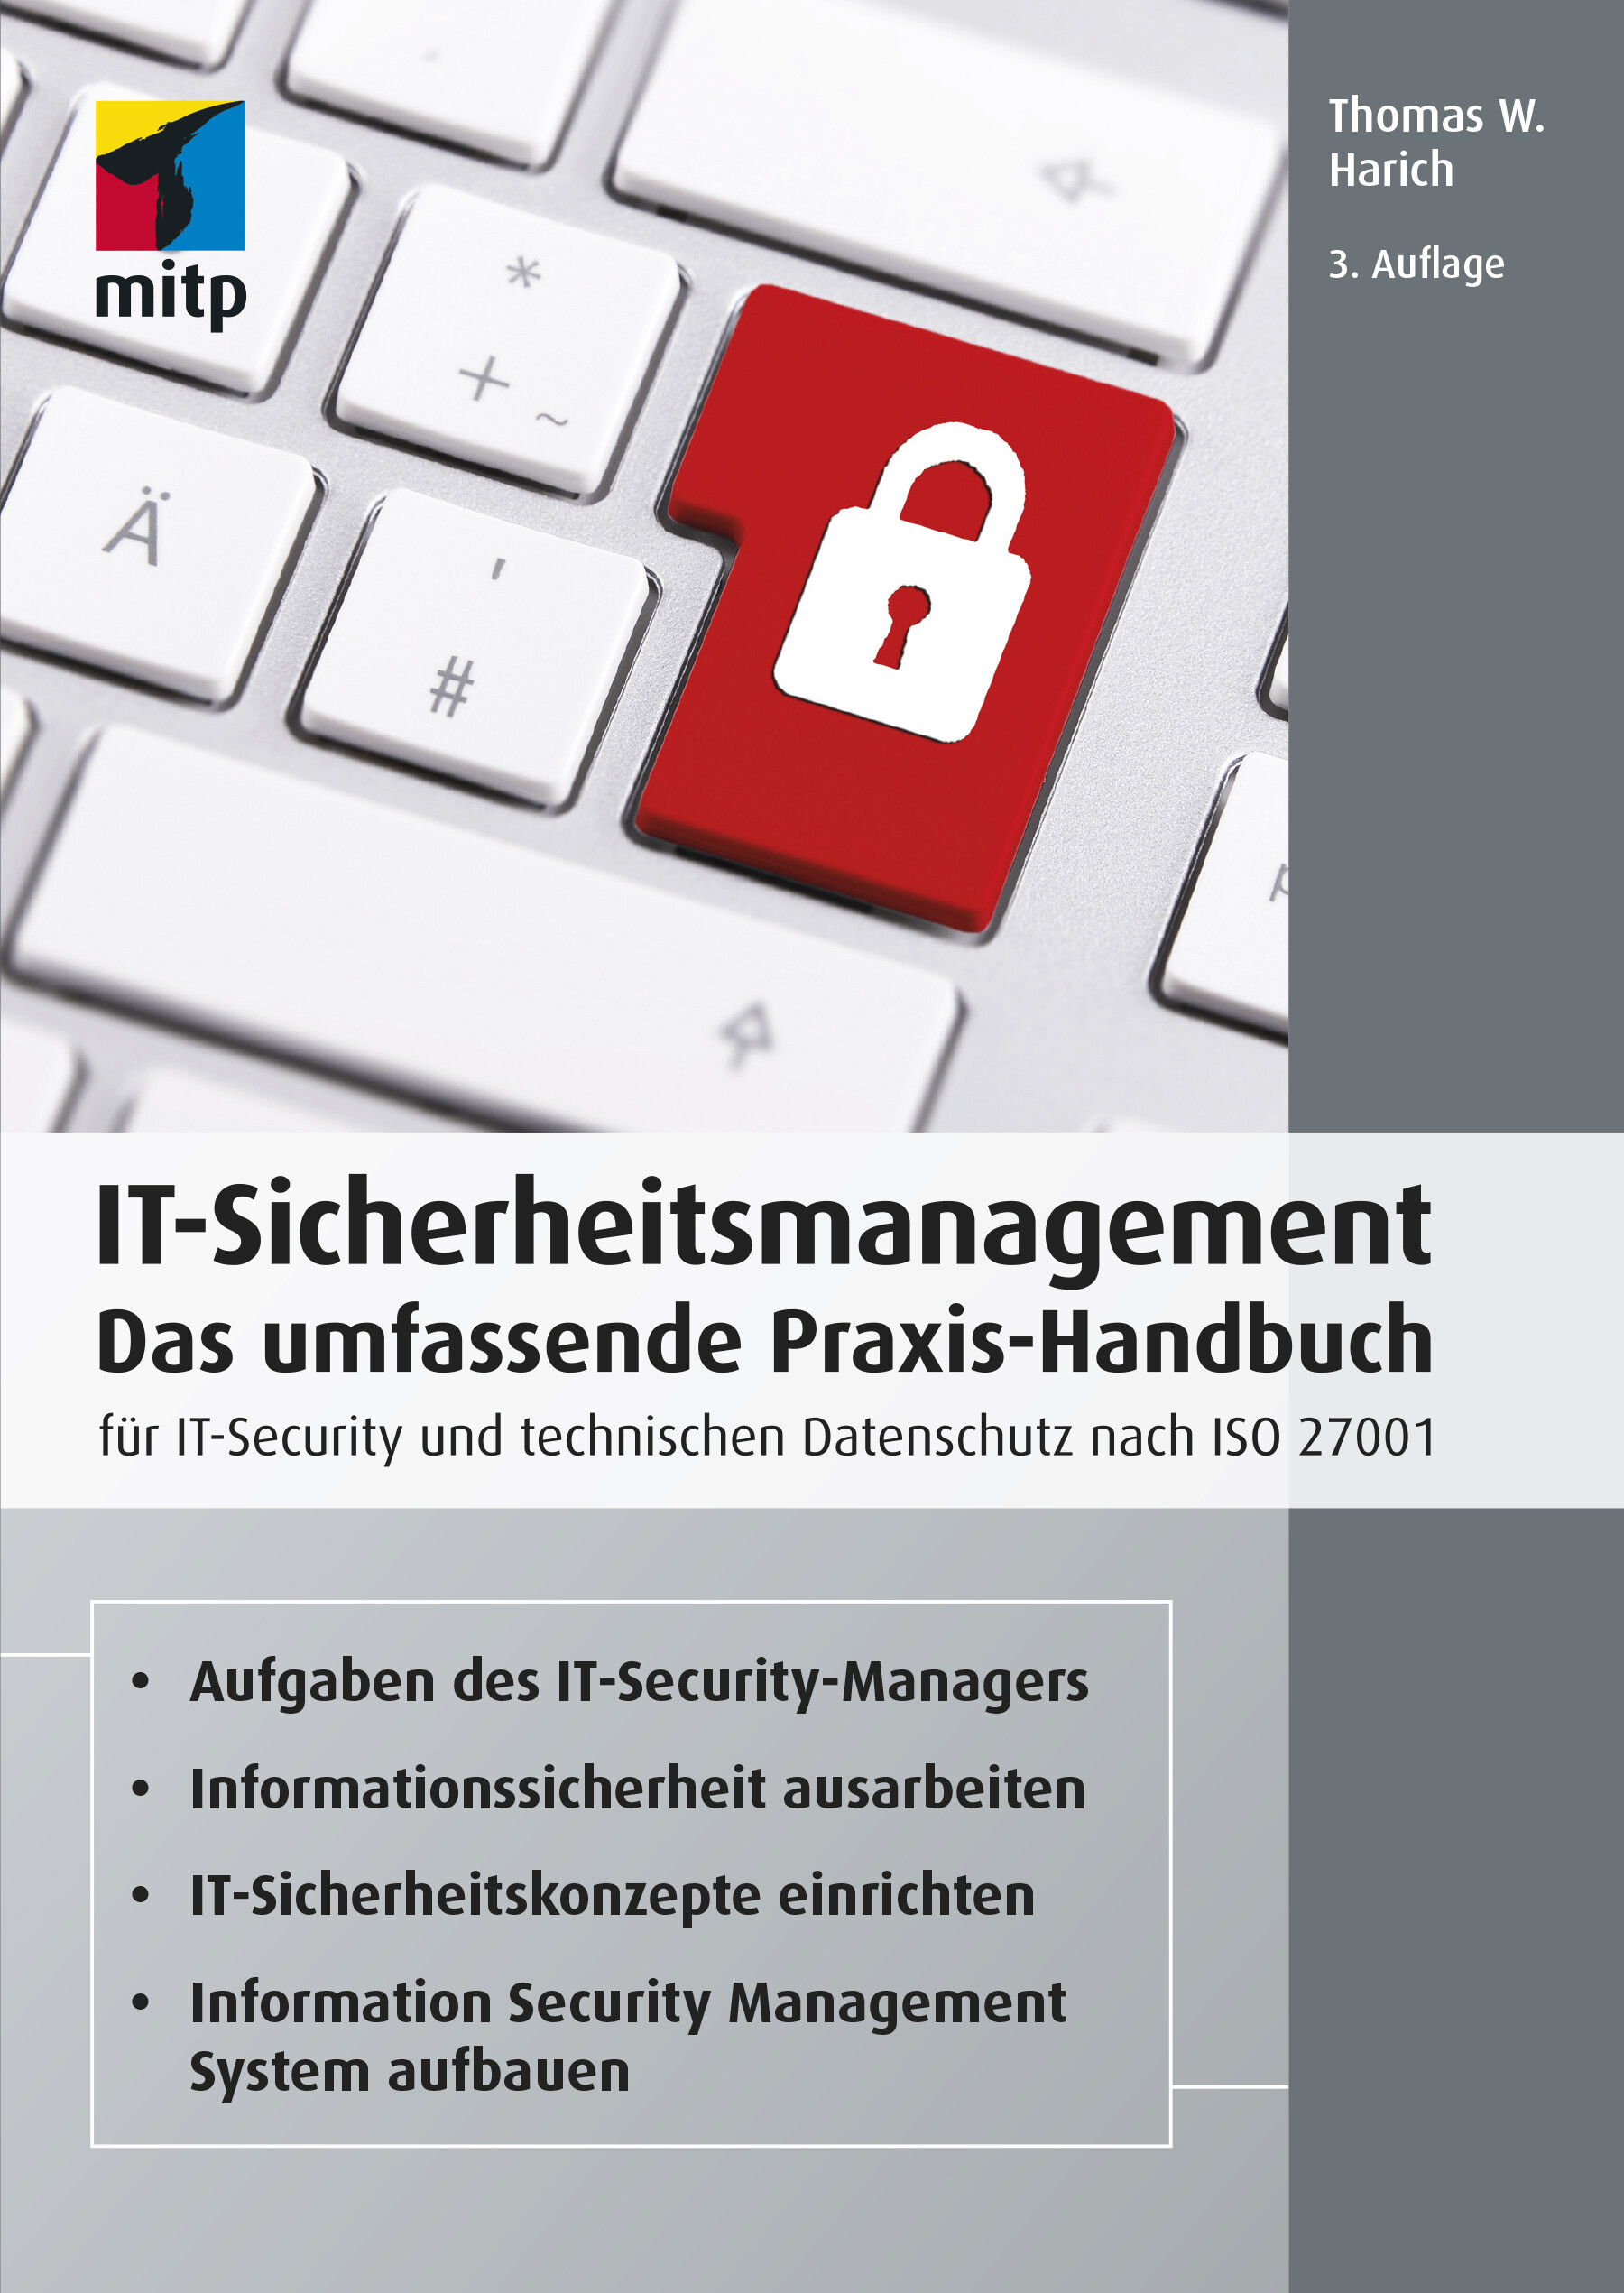 IT-Sicherheitsmanagement (3. Auflg.)